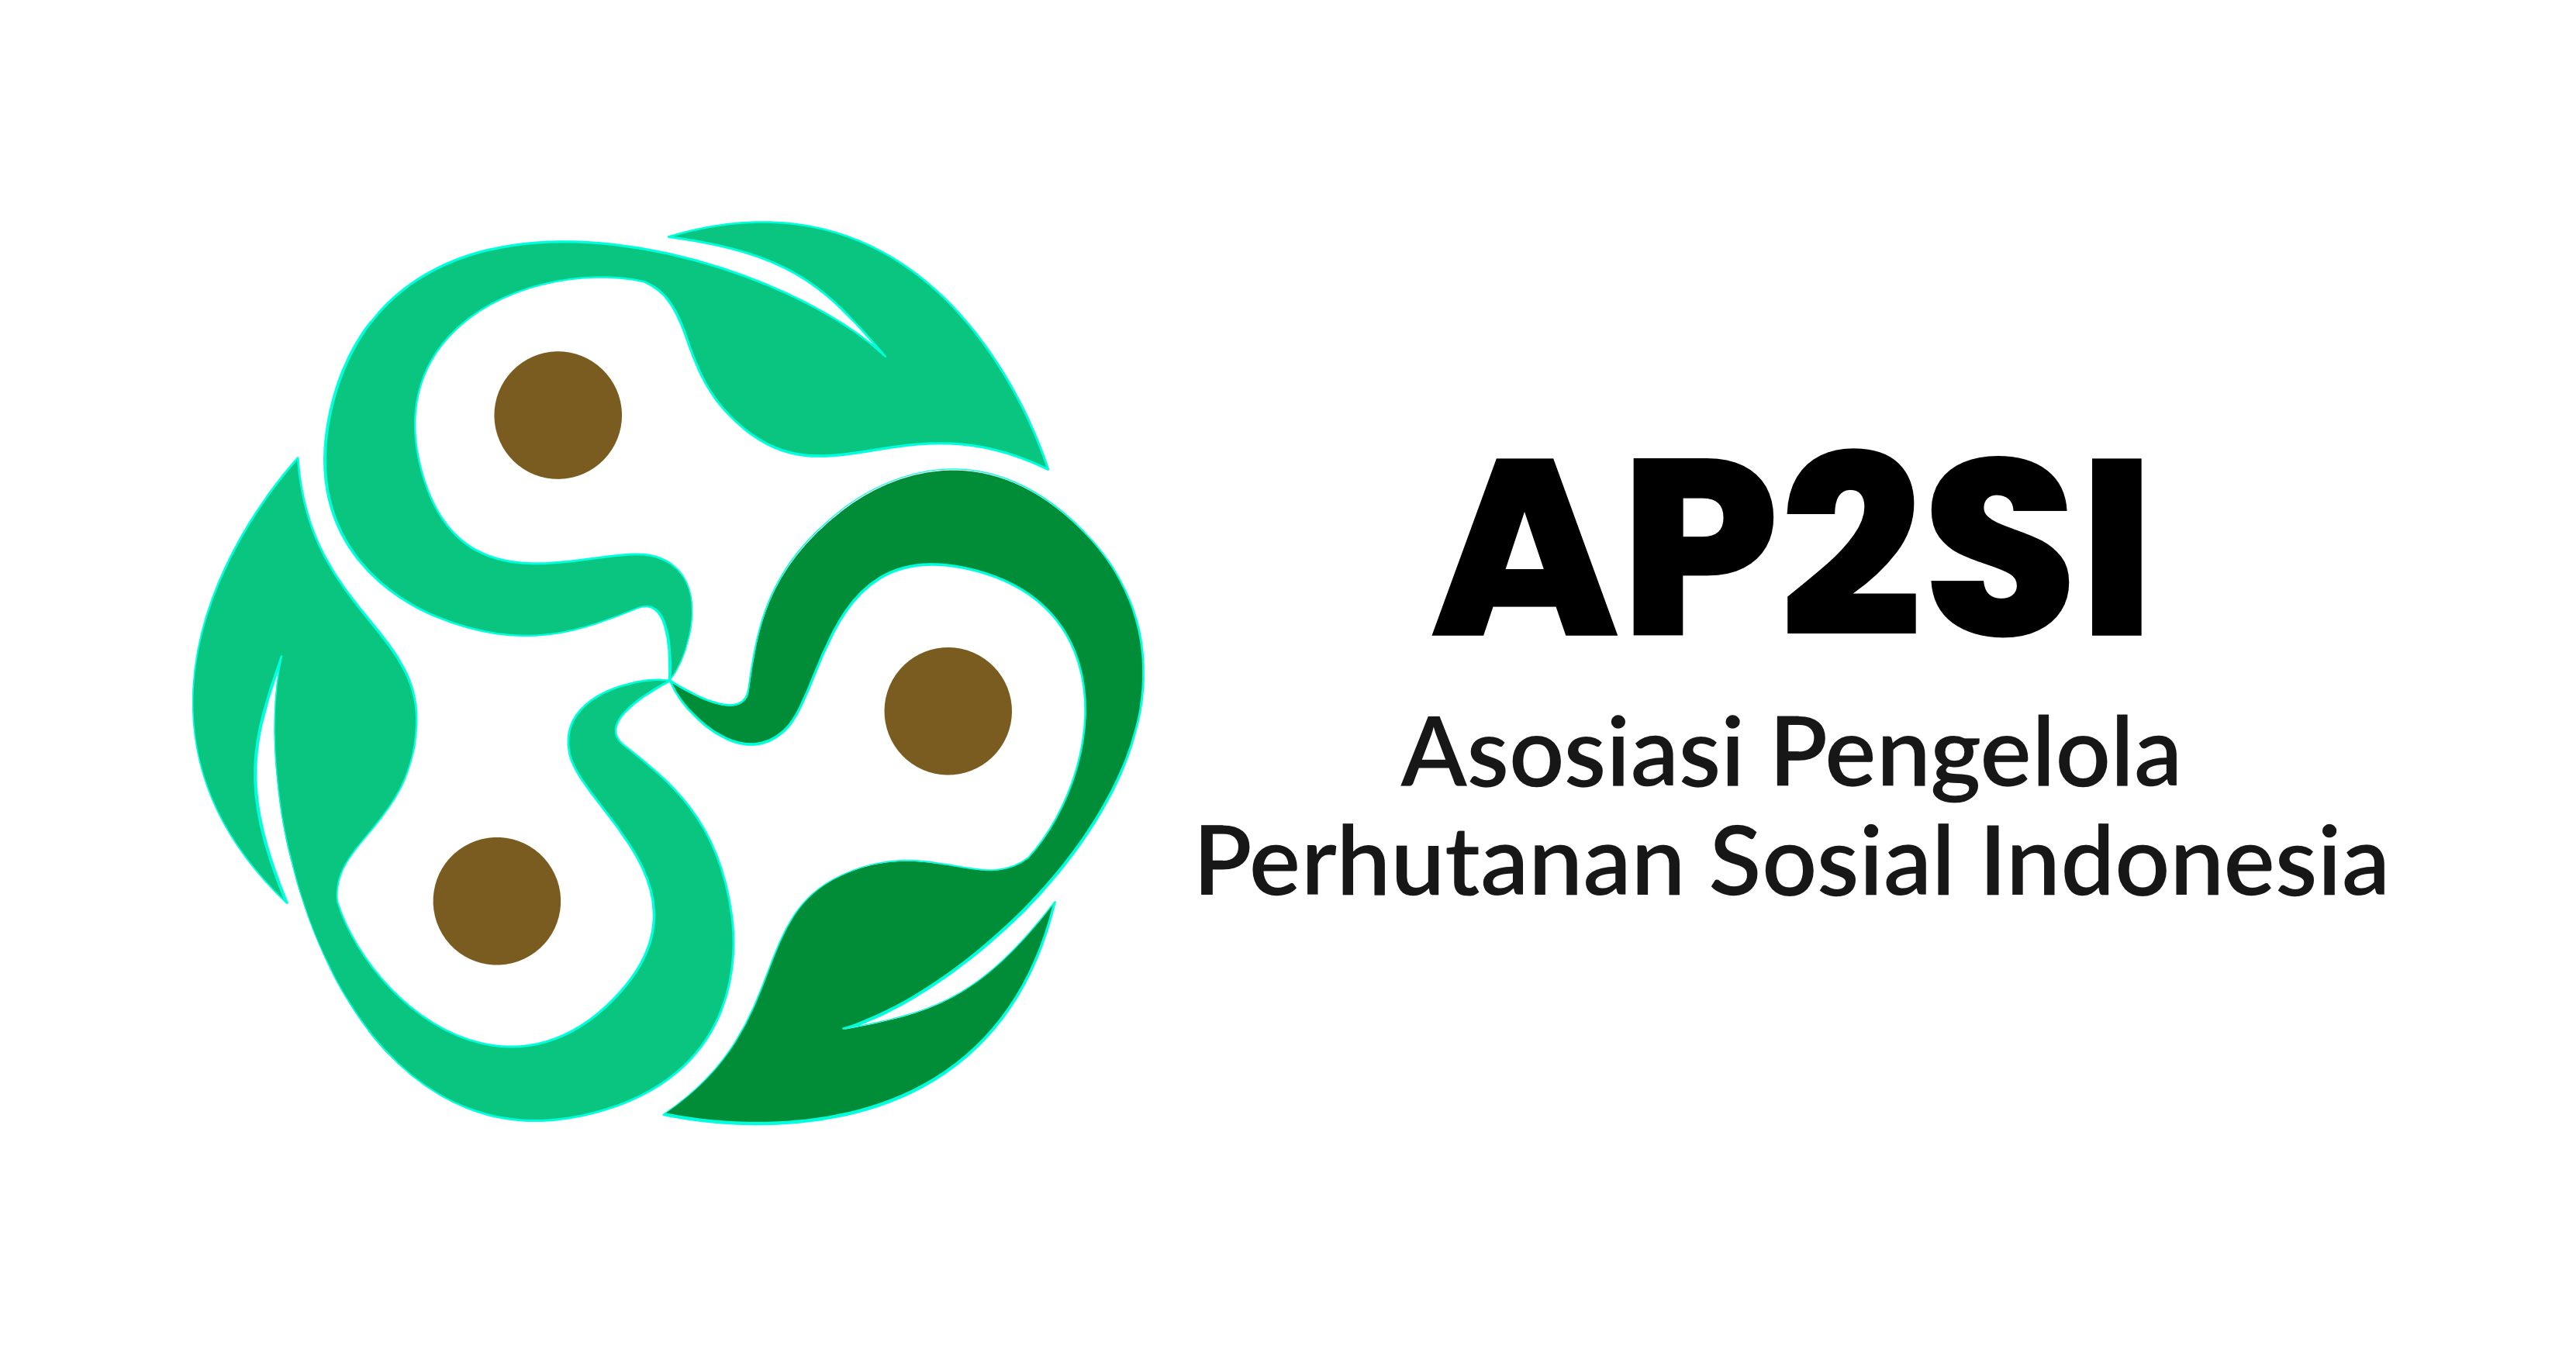 Asosiasi Pengelola Perhutanan Sosial Indonesia